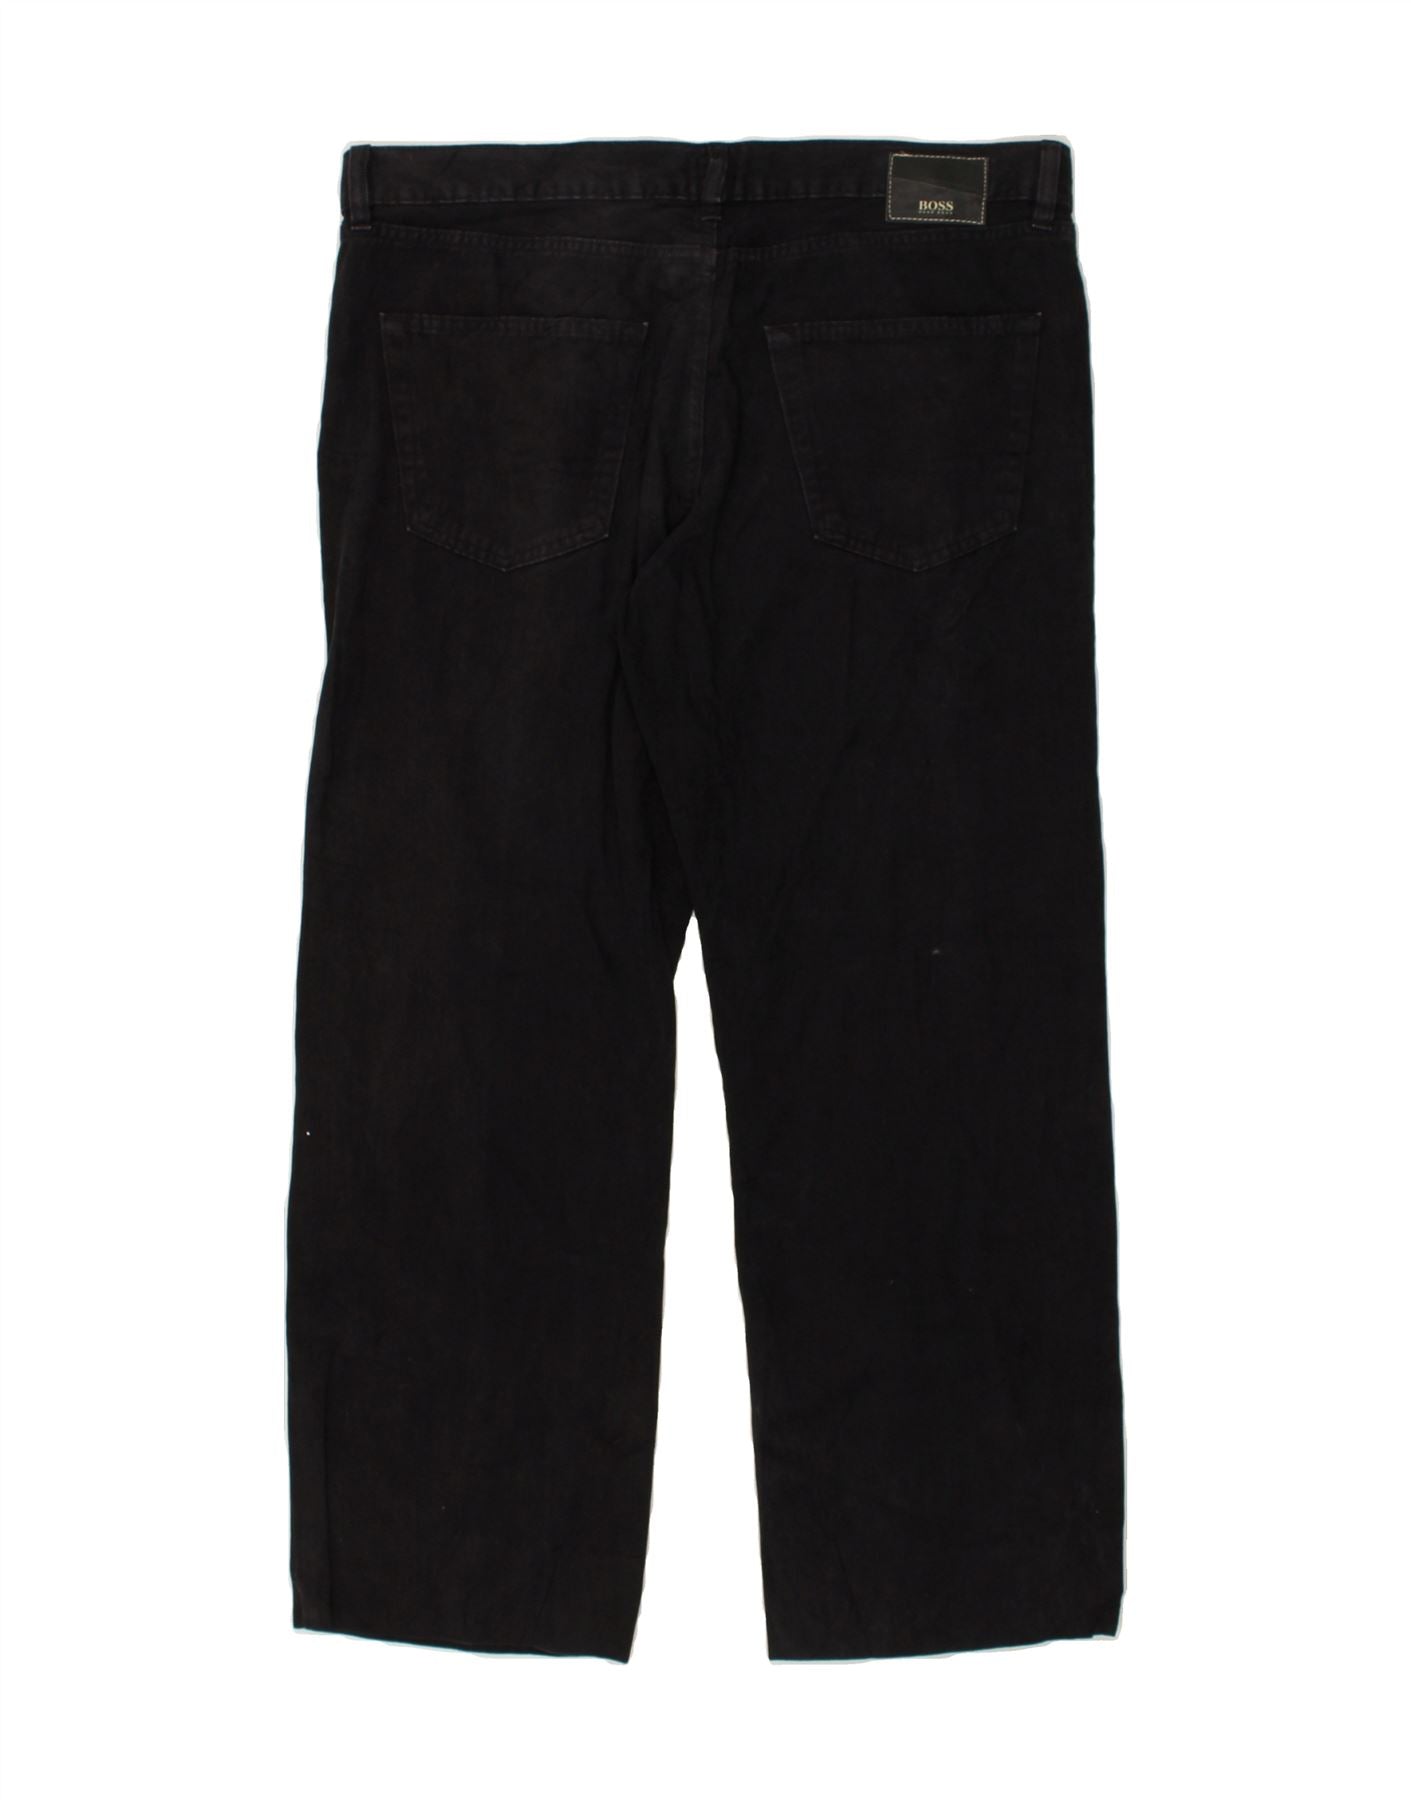 HUGO BOSS Texas rechte jeans heren W38 L29 zwart katoen | Vintage en ...